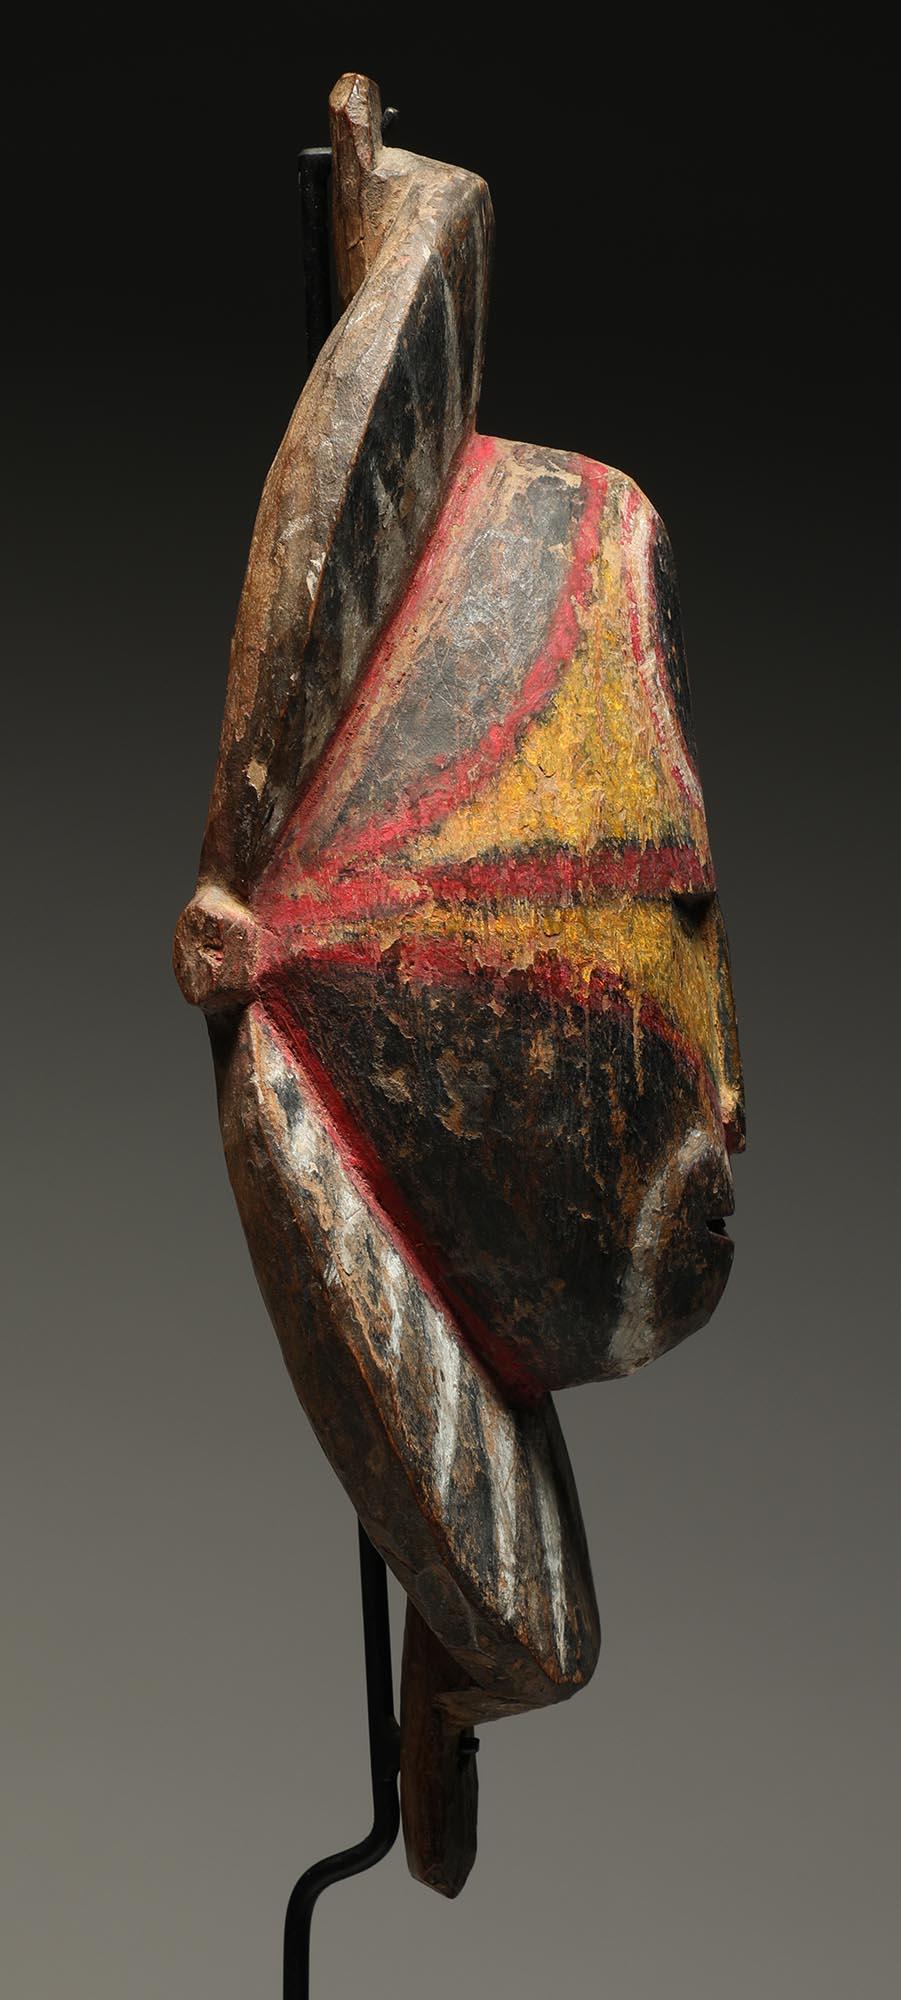 Masque d'igname en bois dur Sepik de Papouasie-Nouvelle-Guinée avec des zones de pigments jaunes, rouges, noirs et blancs. Visage expressif.
Le masque mesure 8 1/2 pouces de haut, sur une base métallique personnalisée, pour une hauteur totale de 12